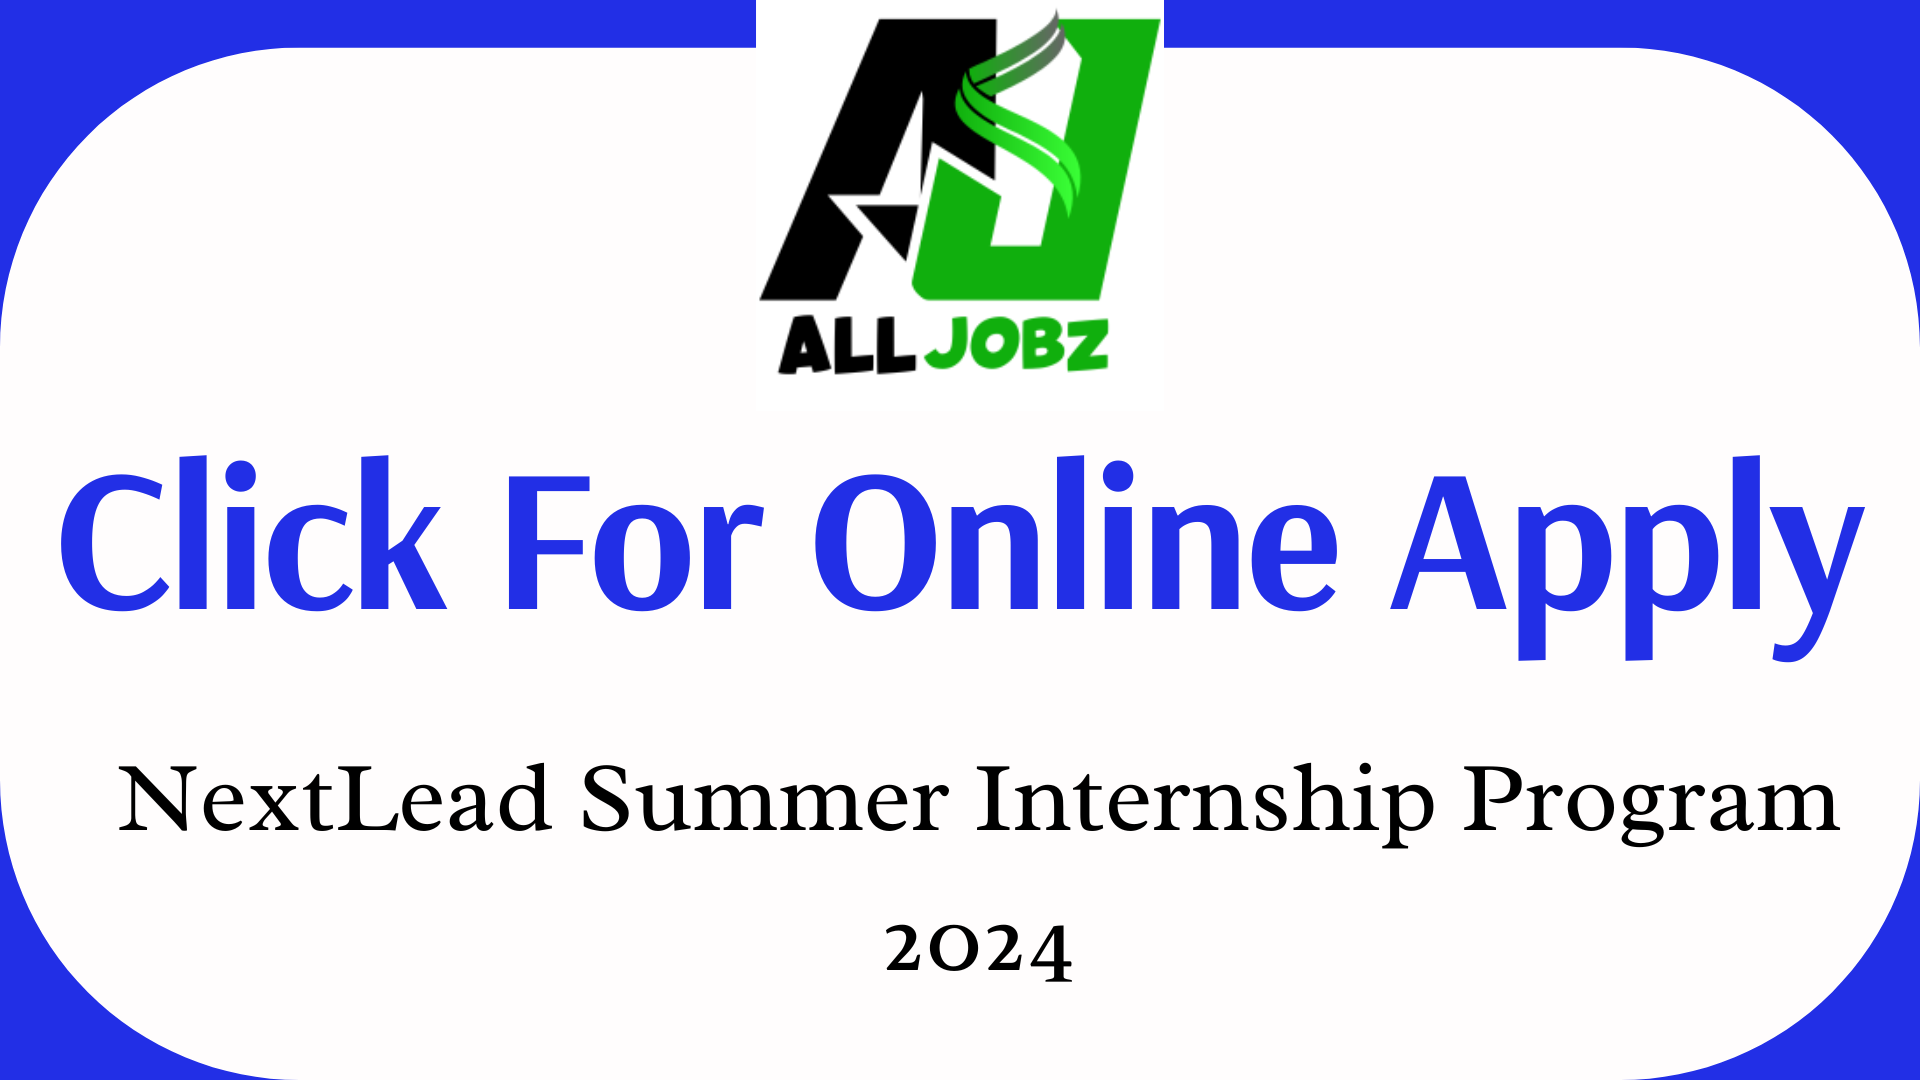 Nextlead Summer Internship Program